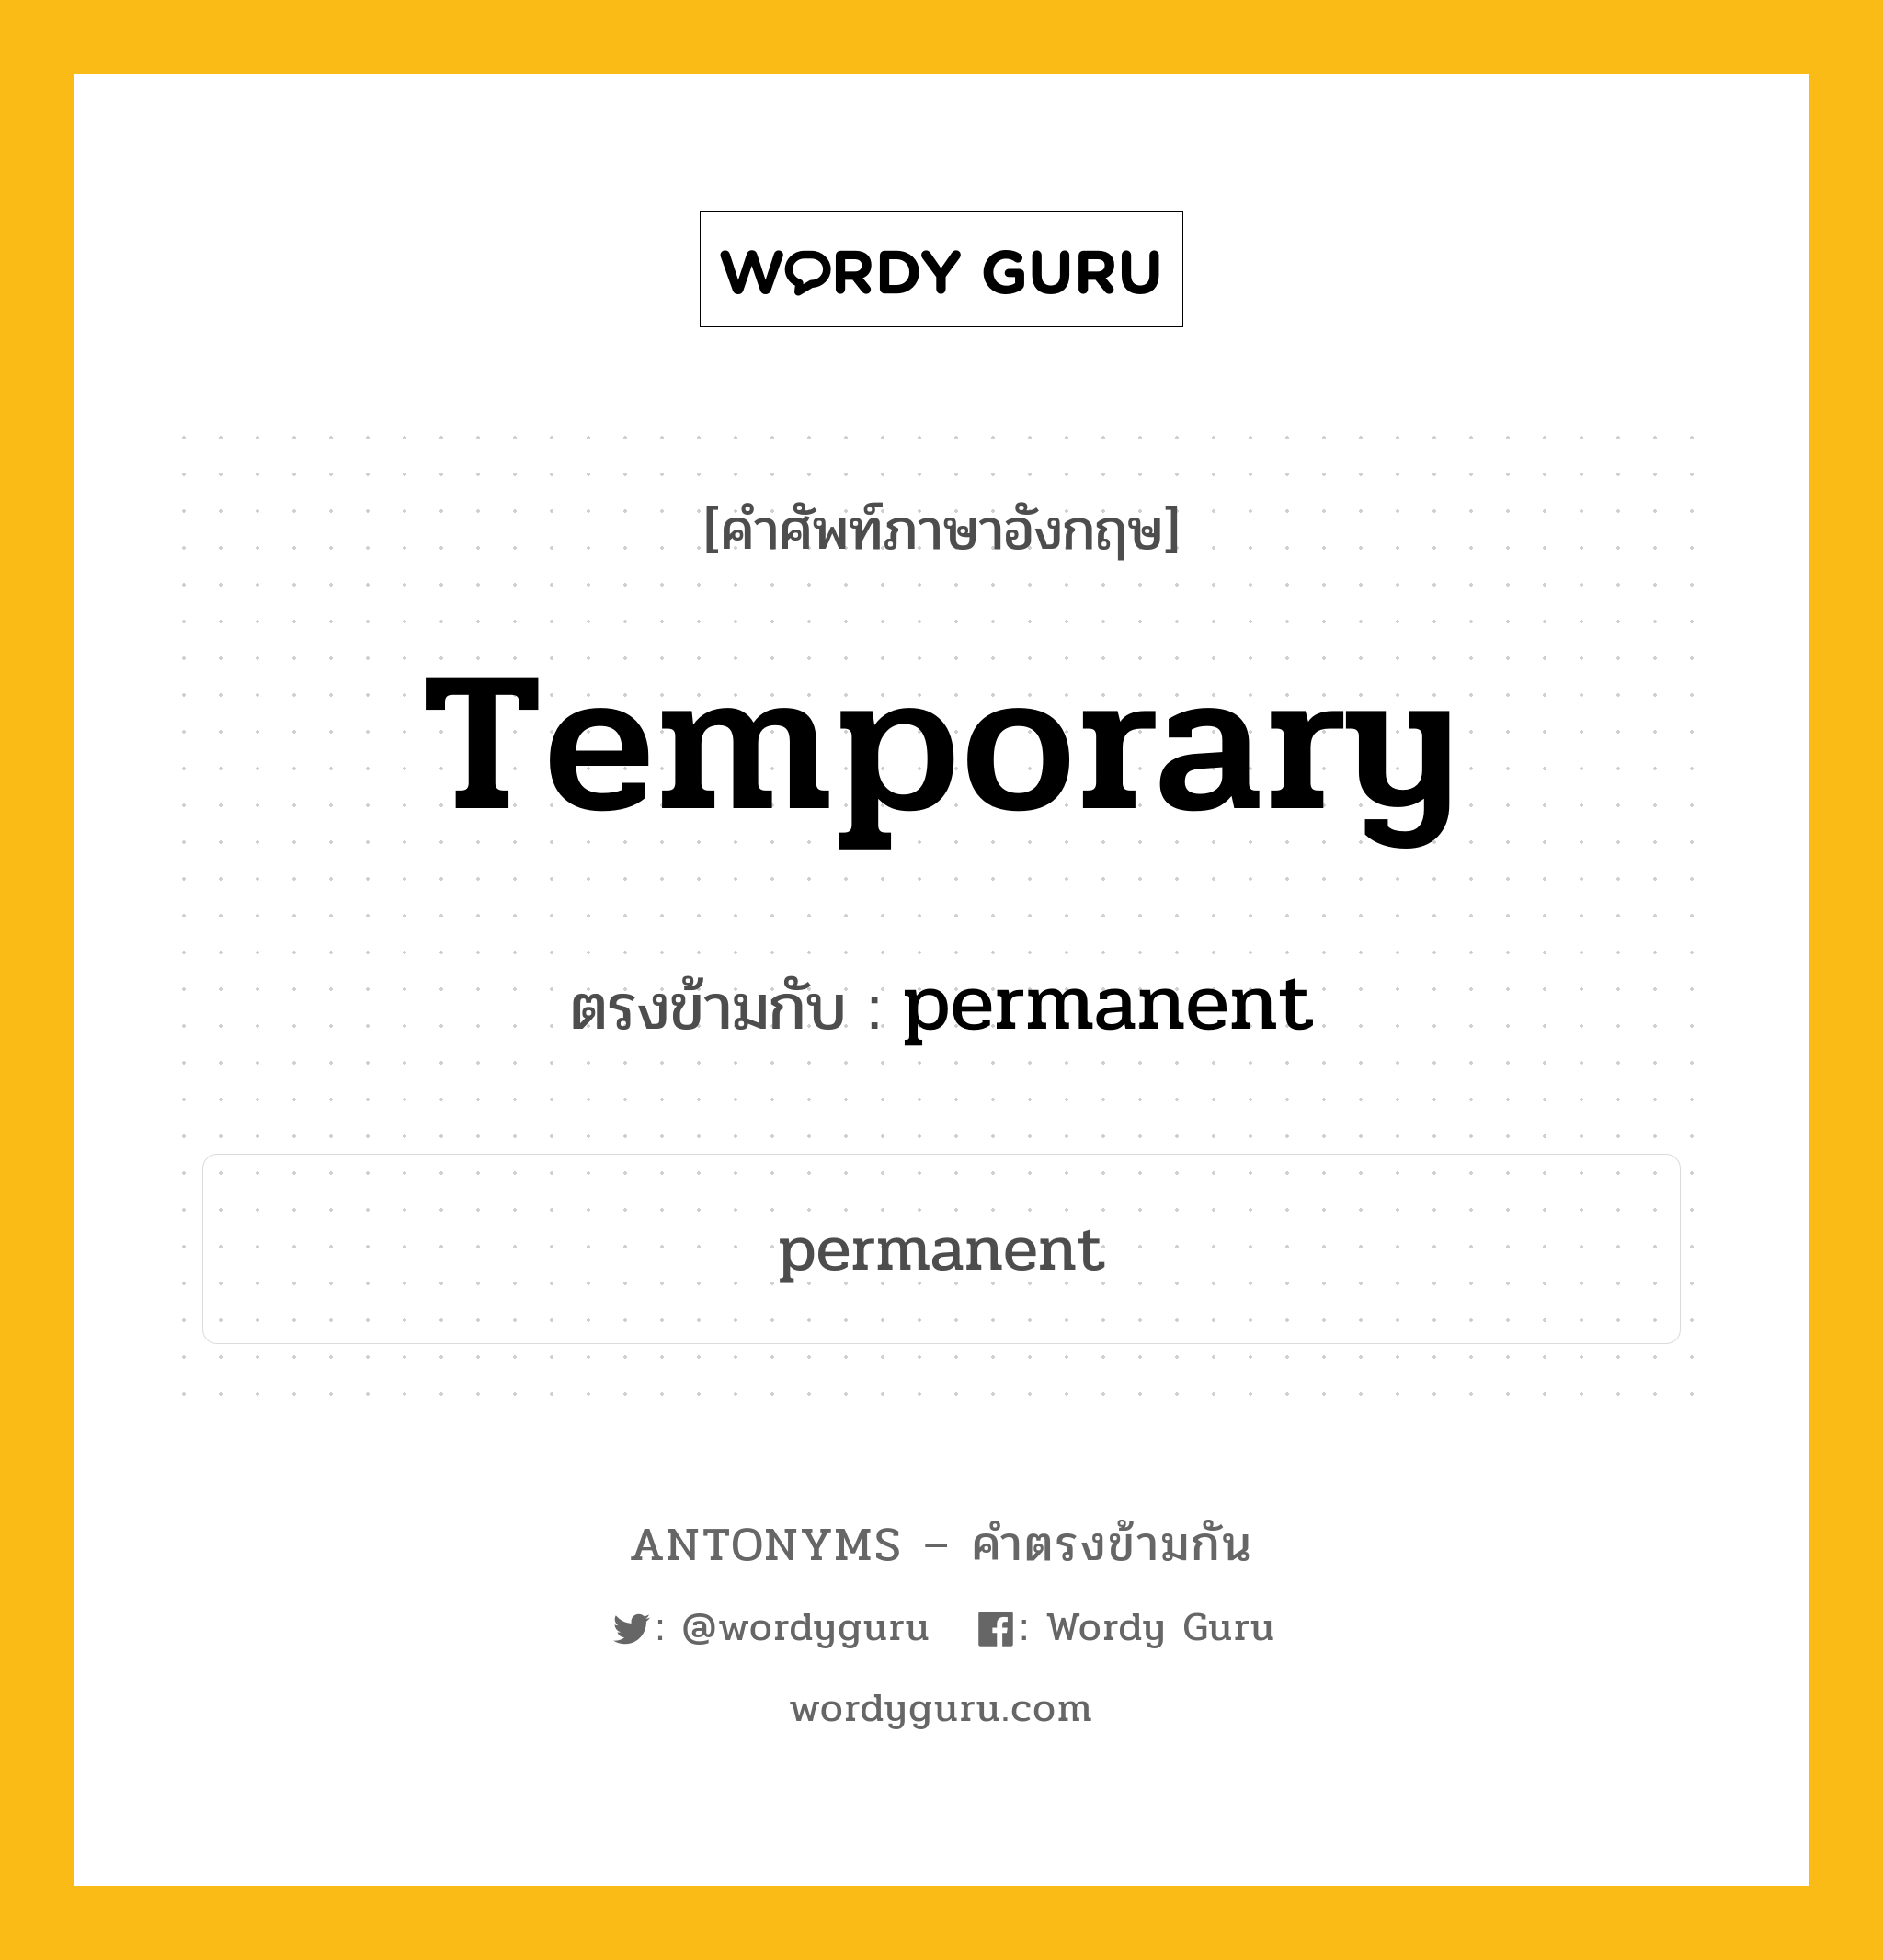 temporary เป็นคำตรงข้ามกับคำไหนบ้าง?, คำศัพท์ภาษาอังกฤษ temporary ตรงข้ามกับ permanent หมวด permanent